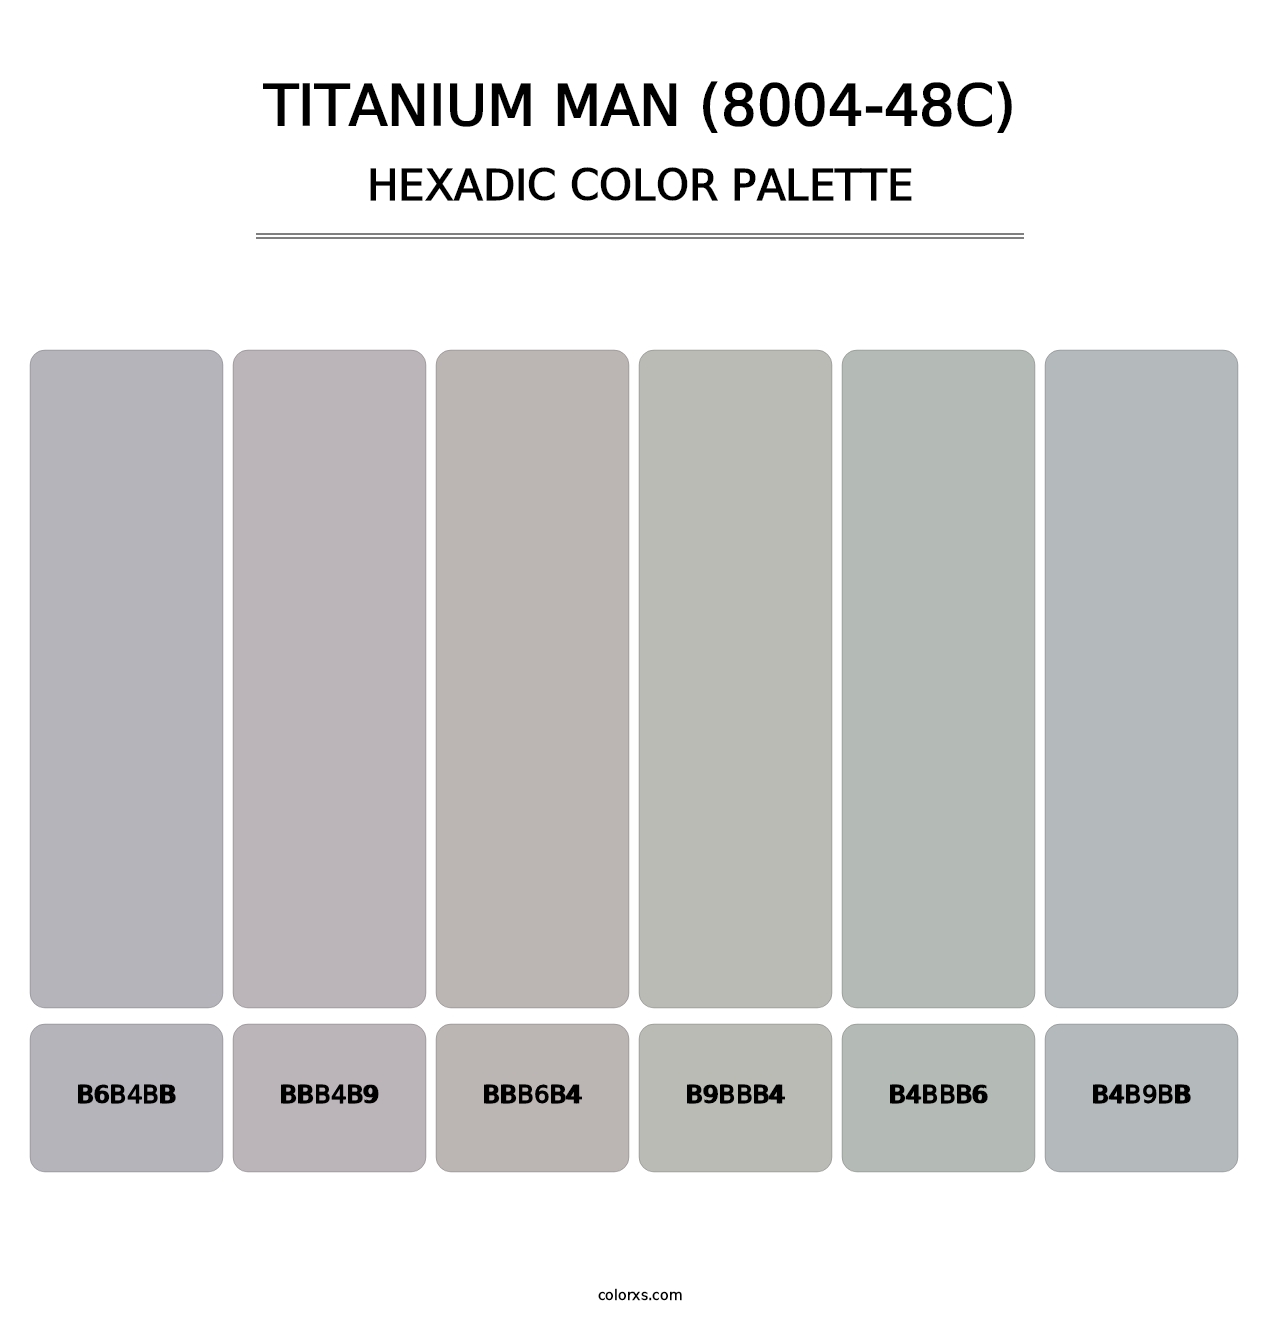 Titanium Man (8004-48C) - Hexadic Color Palette